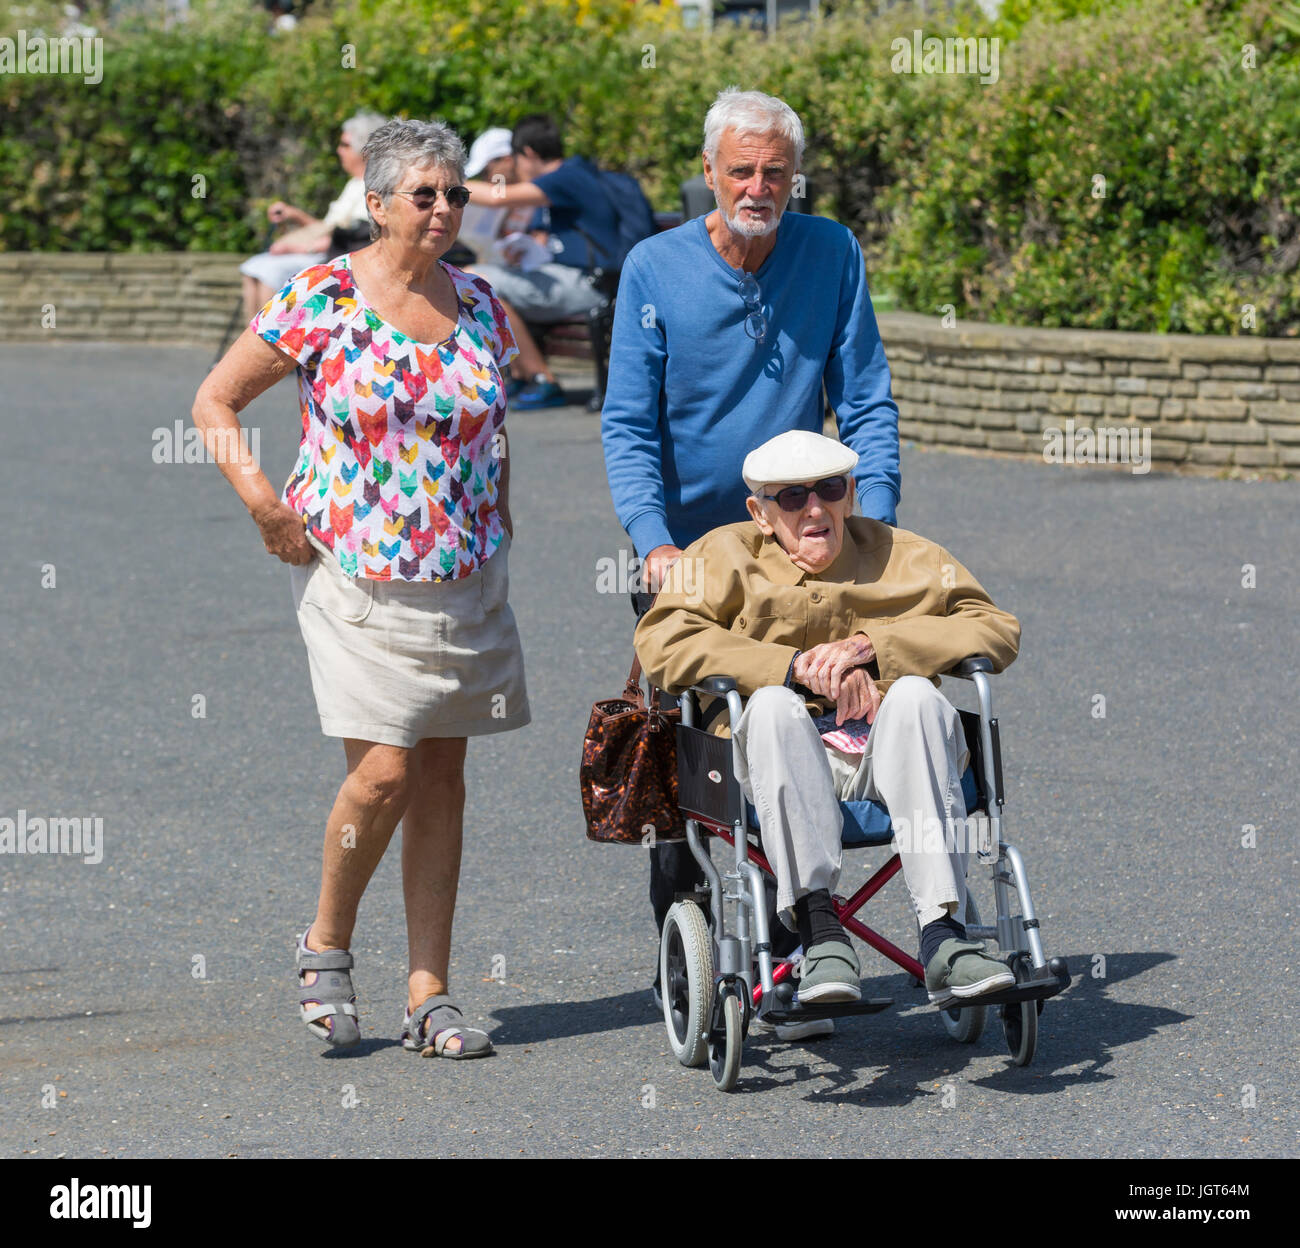 Senioren Behinderte Mann im Rollstuhl geschoben. Stockfoto